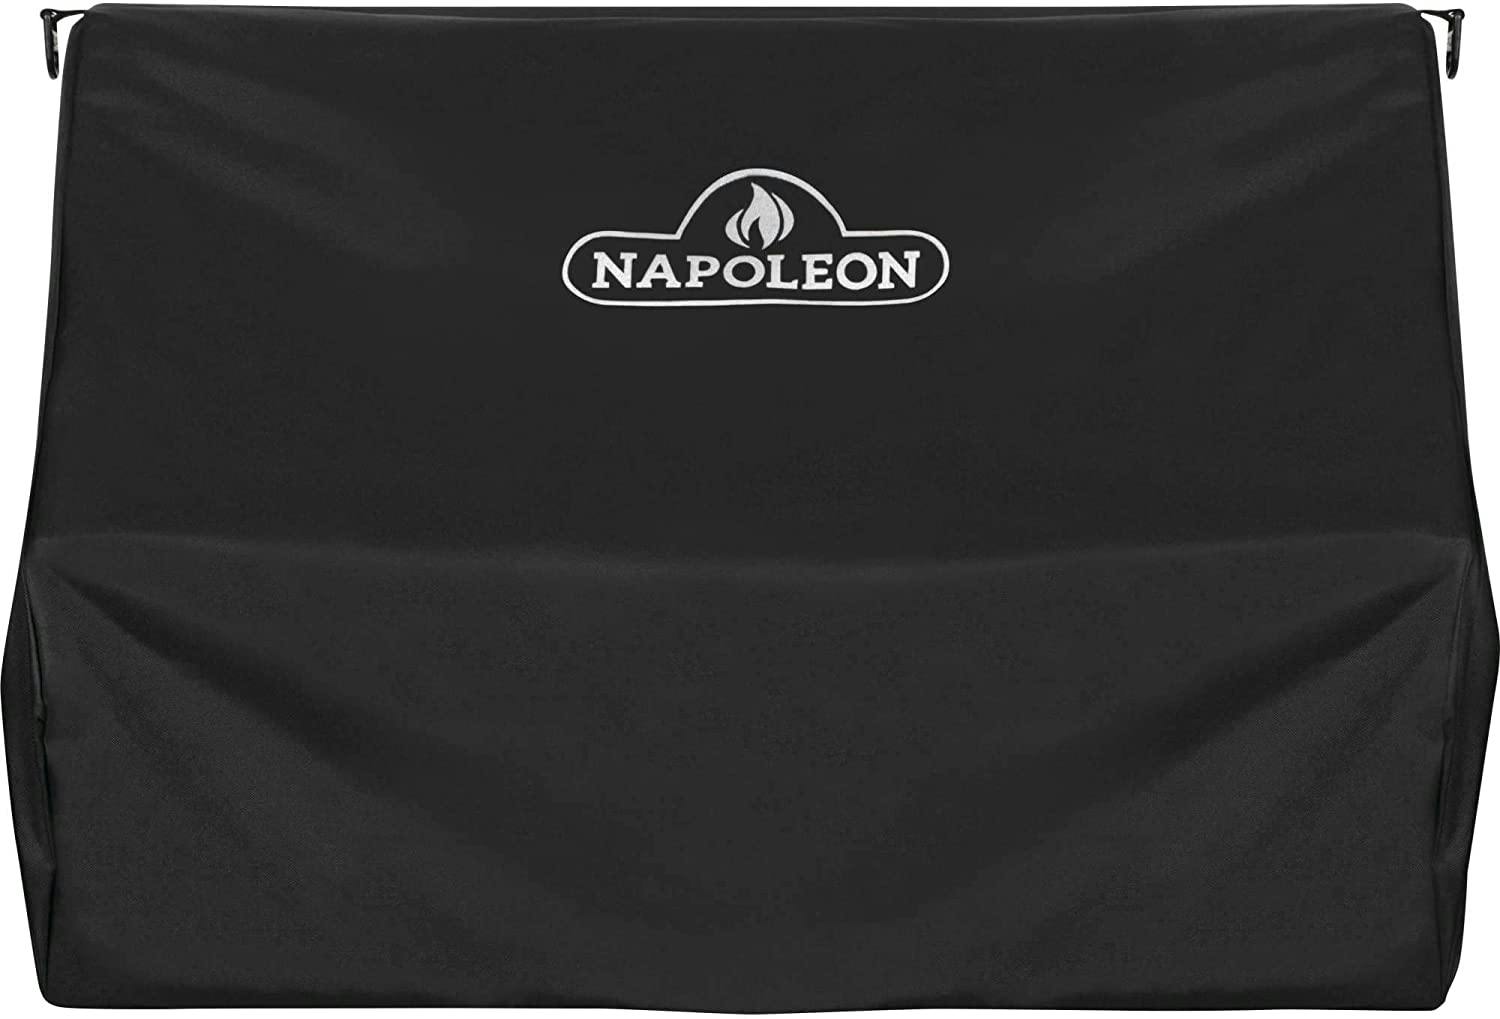 Napoleon Grill Cover for Pro 500 & Prestige 500 Built-in Grill · 33 in.